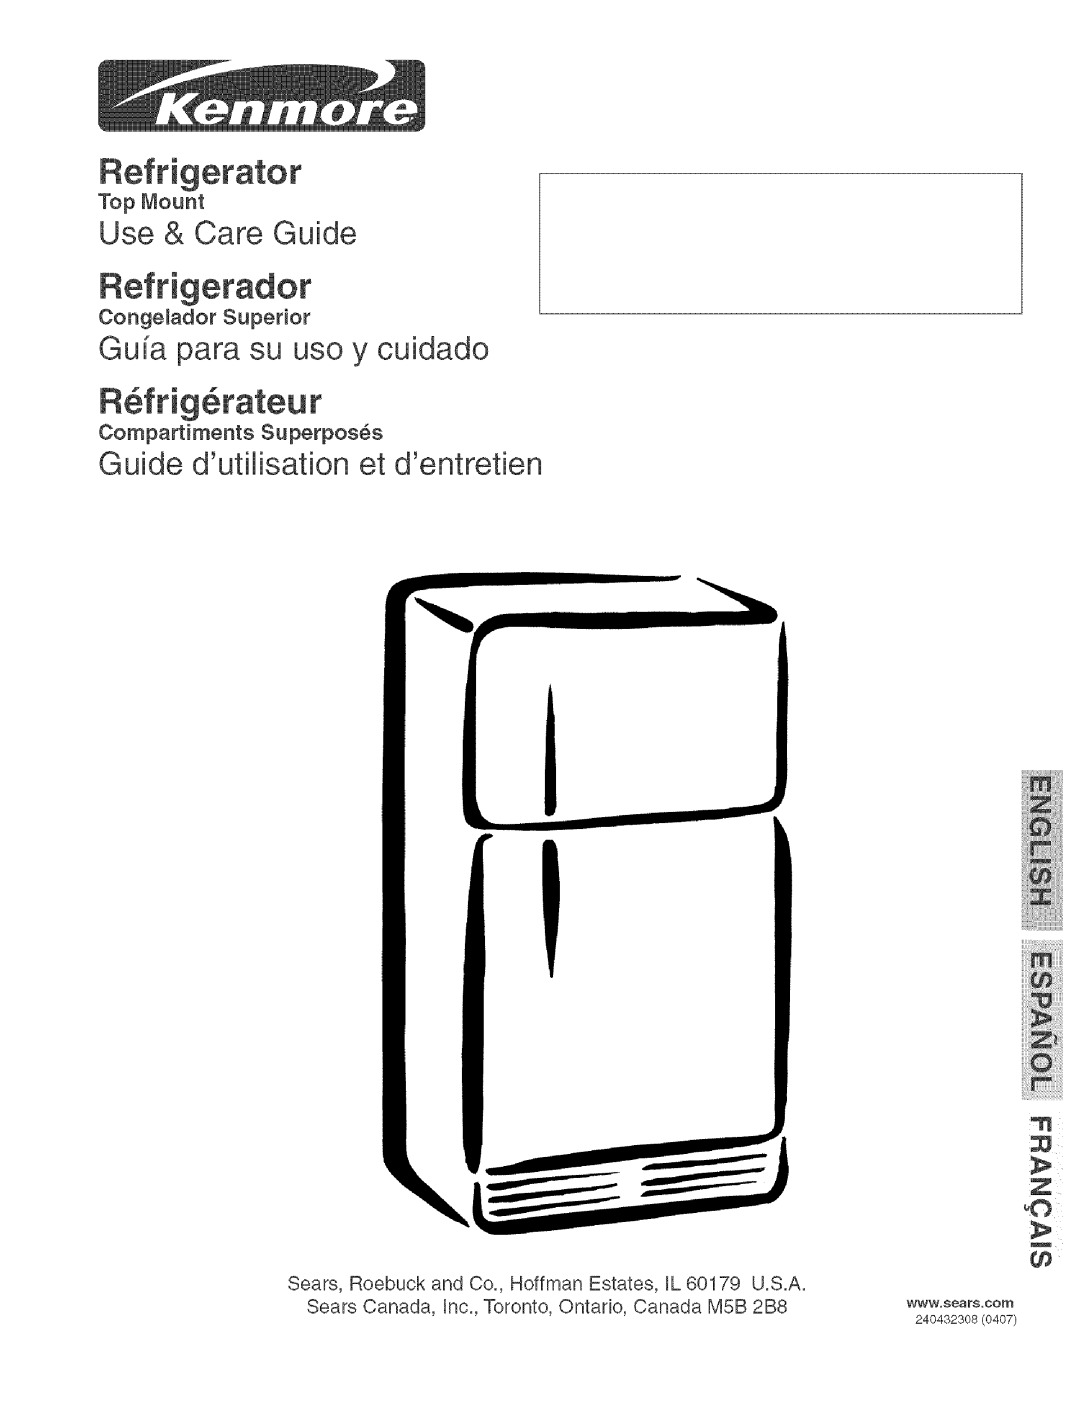 Kenmore 25364853406 manual Refrigerator, Use & Care Guide, Gufa para su uso y cuidado, Guide dutilisation et dentretien 